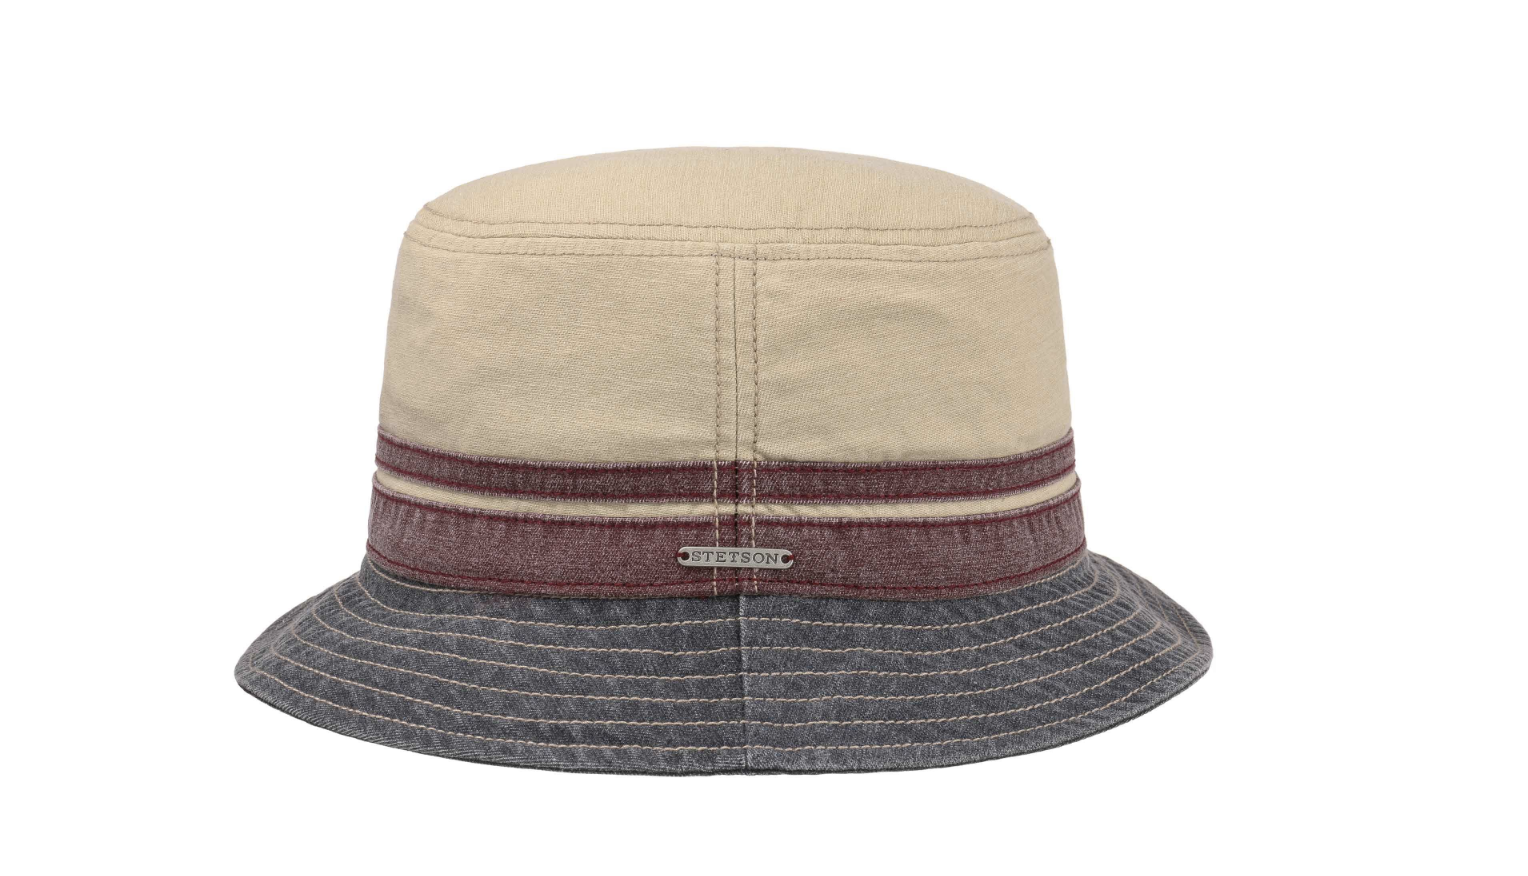 Headgear for beard wearers: the fisherman's hat